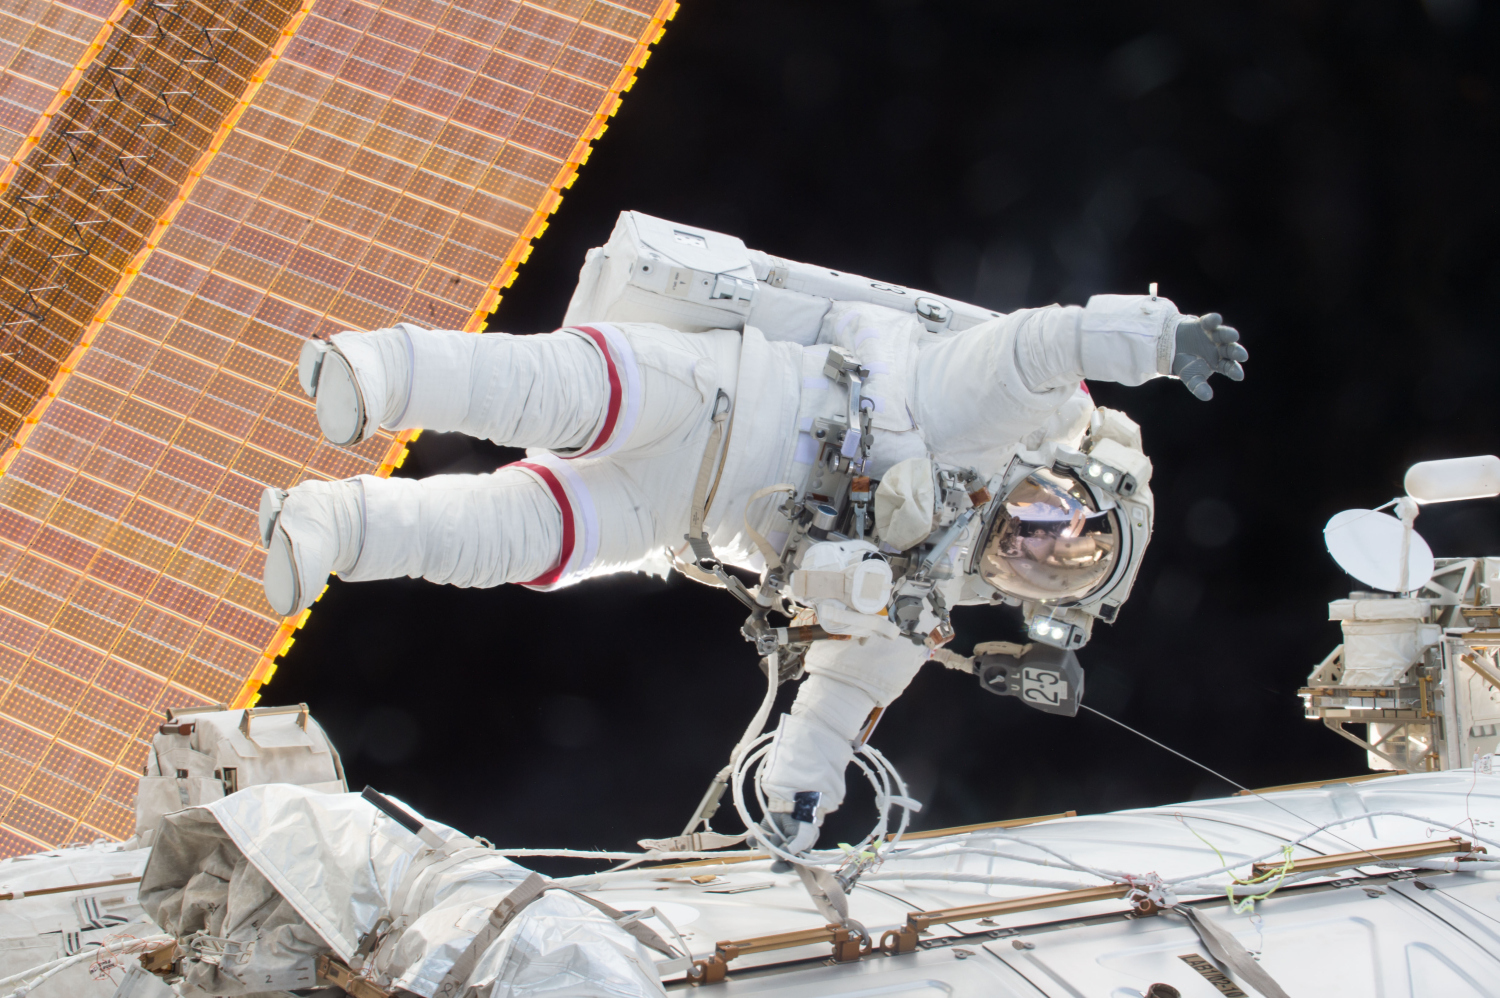 La NASA ofrece una recompensa al inventor que solucione el problema de los excrementos en el espacio